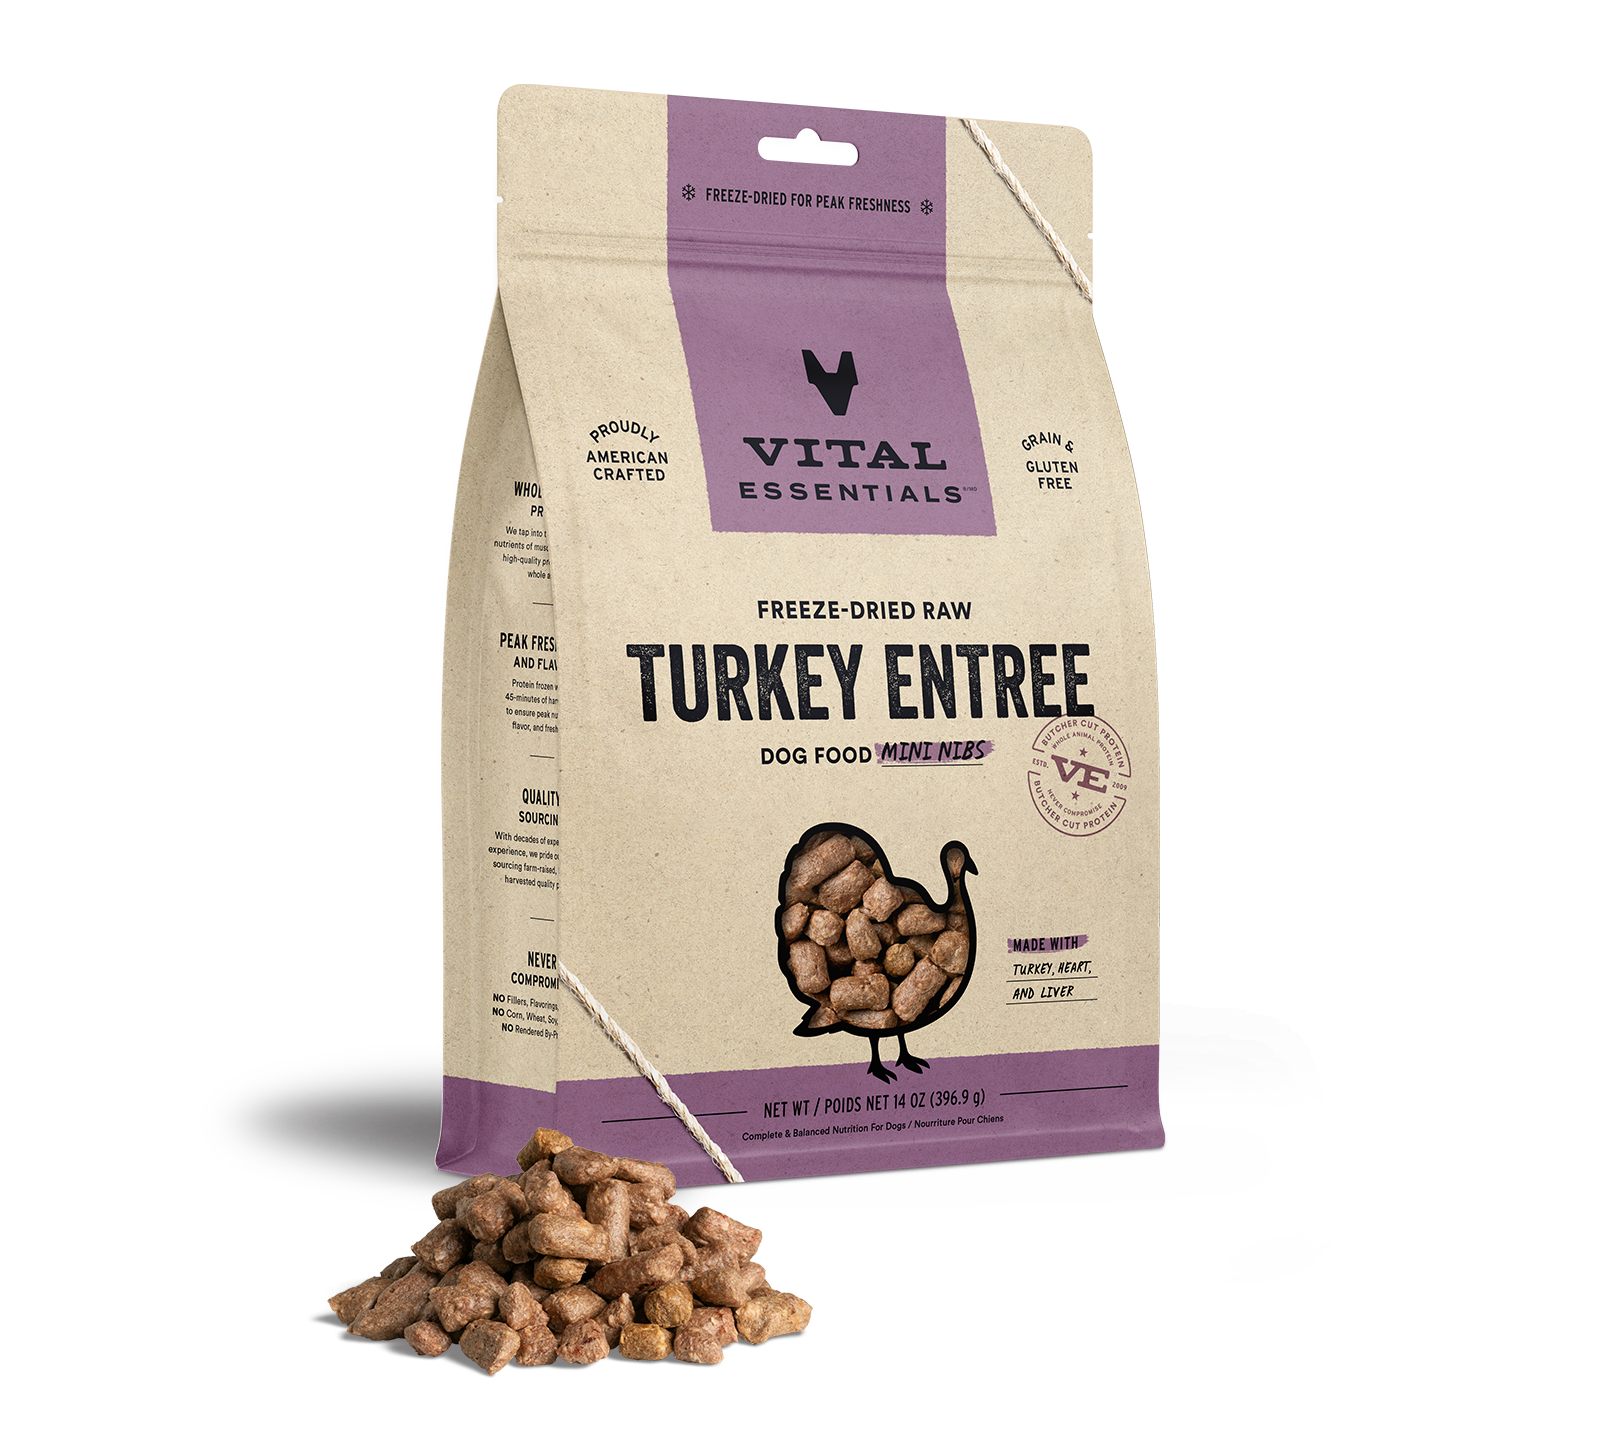 Vital Essentials Freeze-Dried Raw Turkey Entree Dog Food Mini Nibs, 14 oz - Items on Sale Now